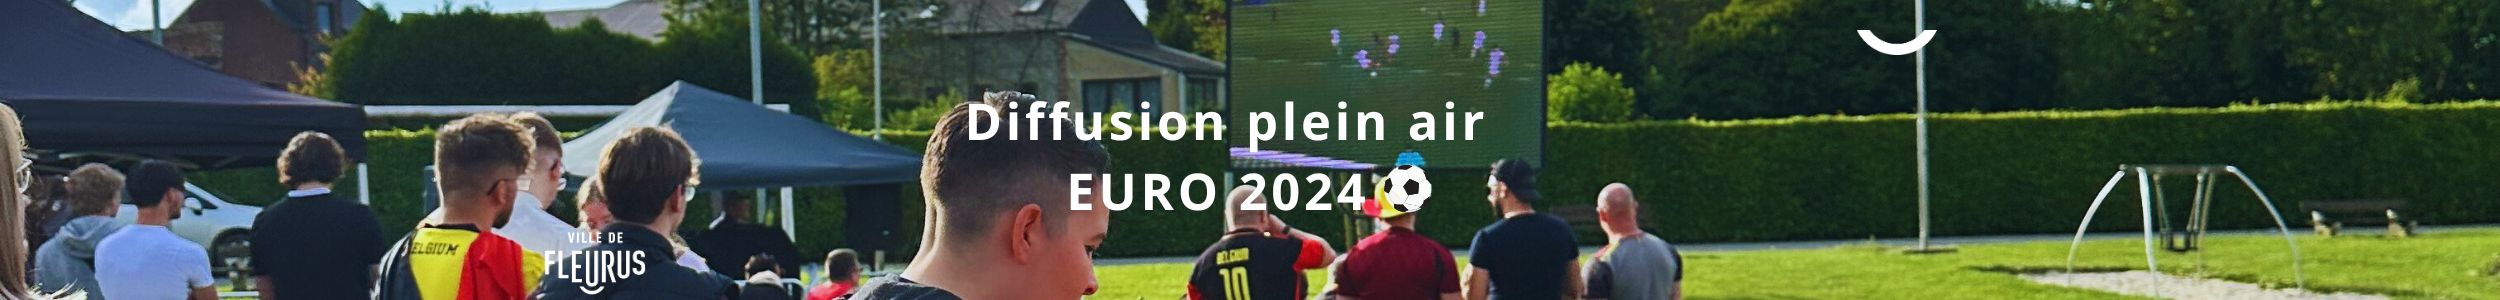 Ecran géant Euro 2024